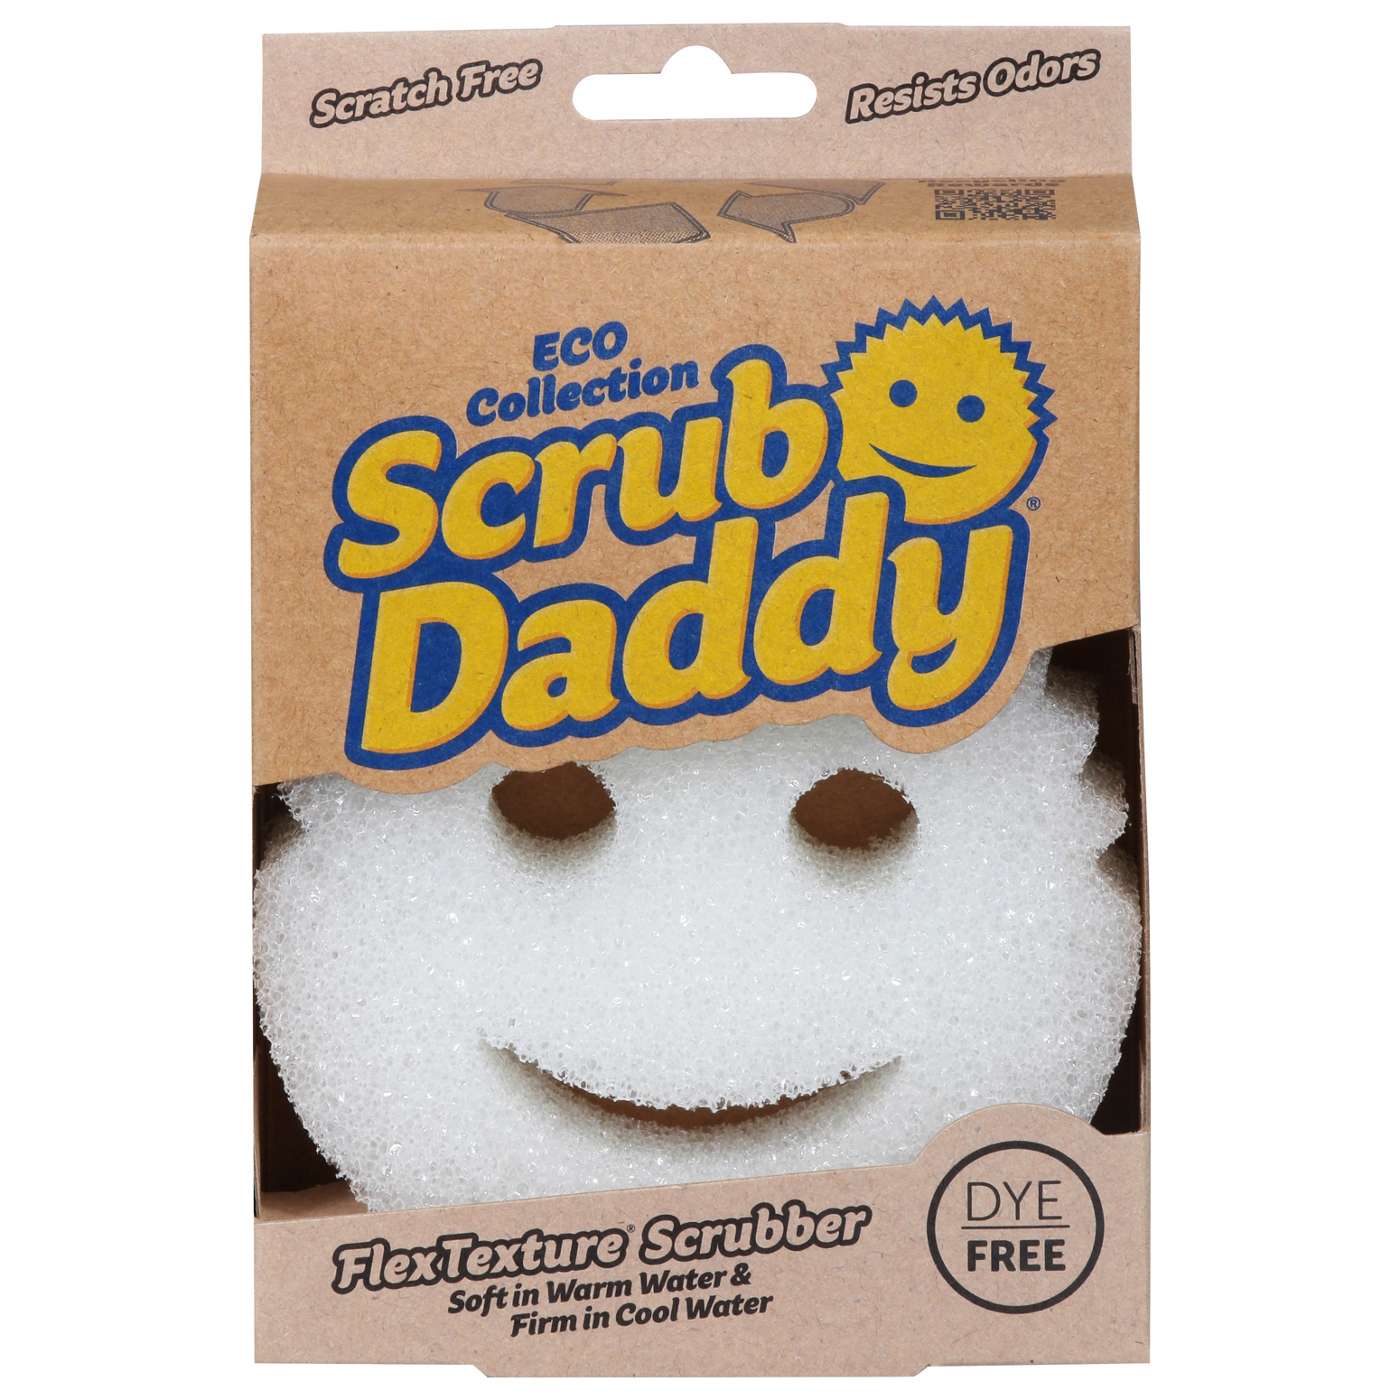  Scrub Daddy Dual Sided Sponge and Scrubber - Scrub